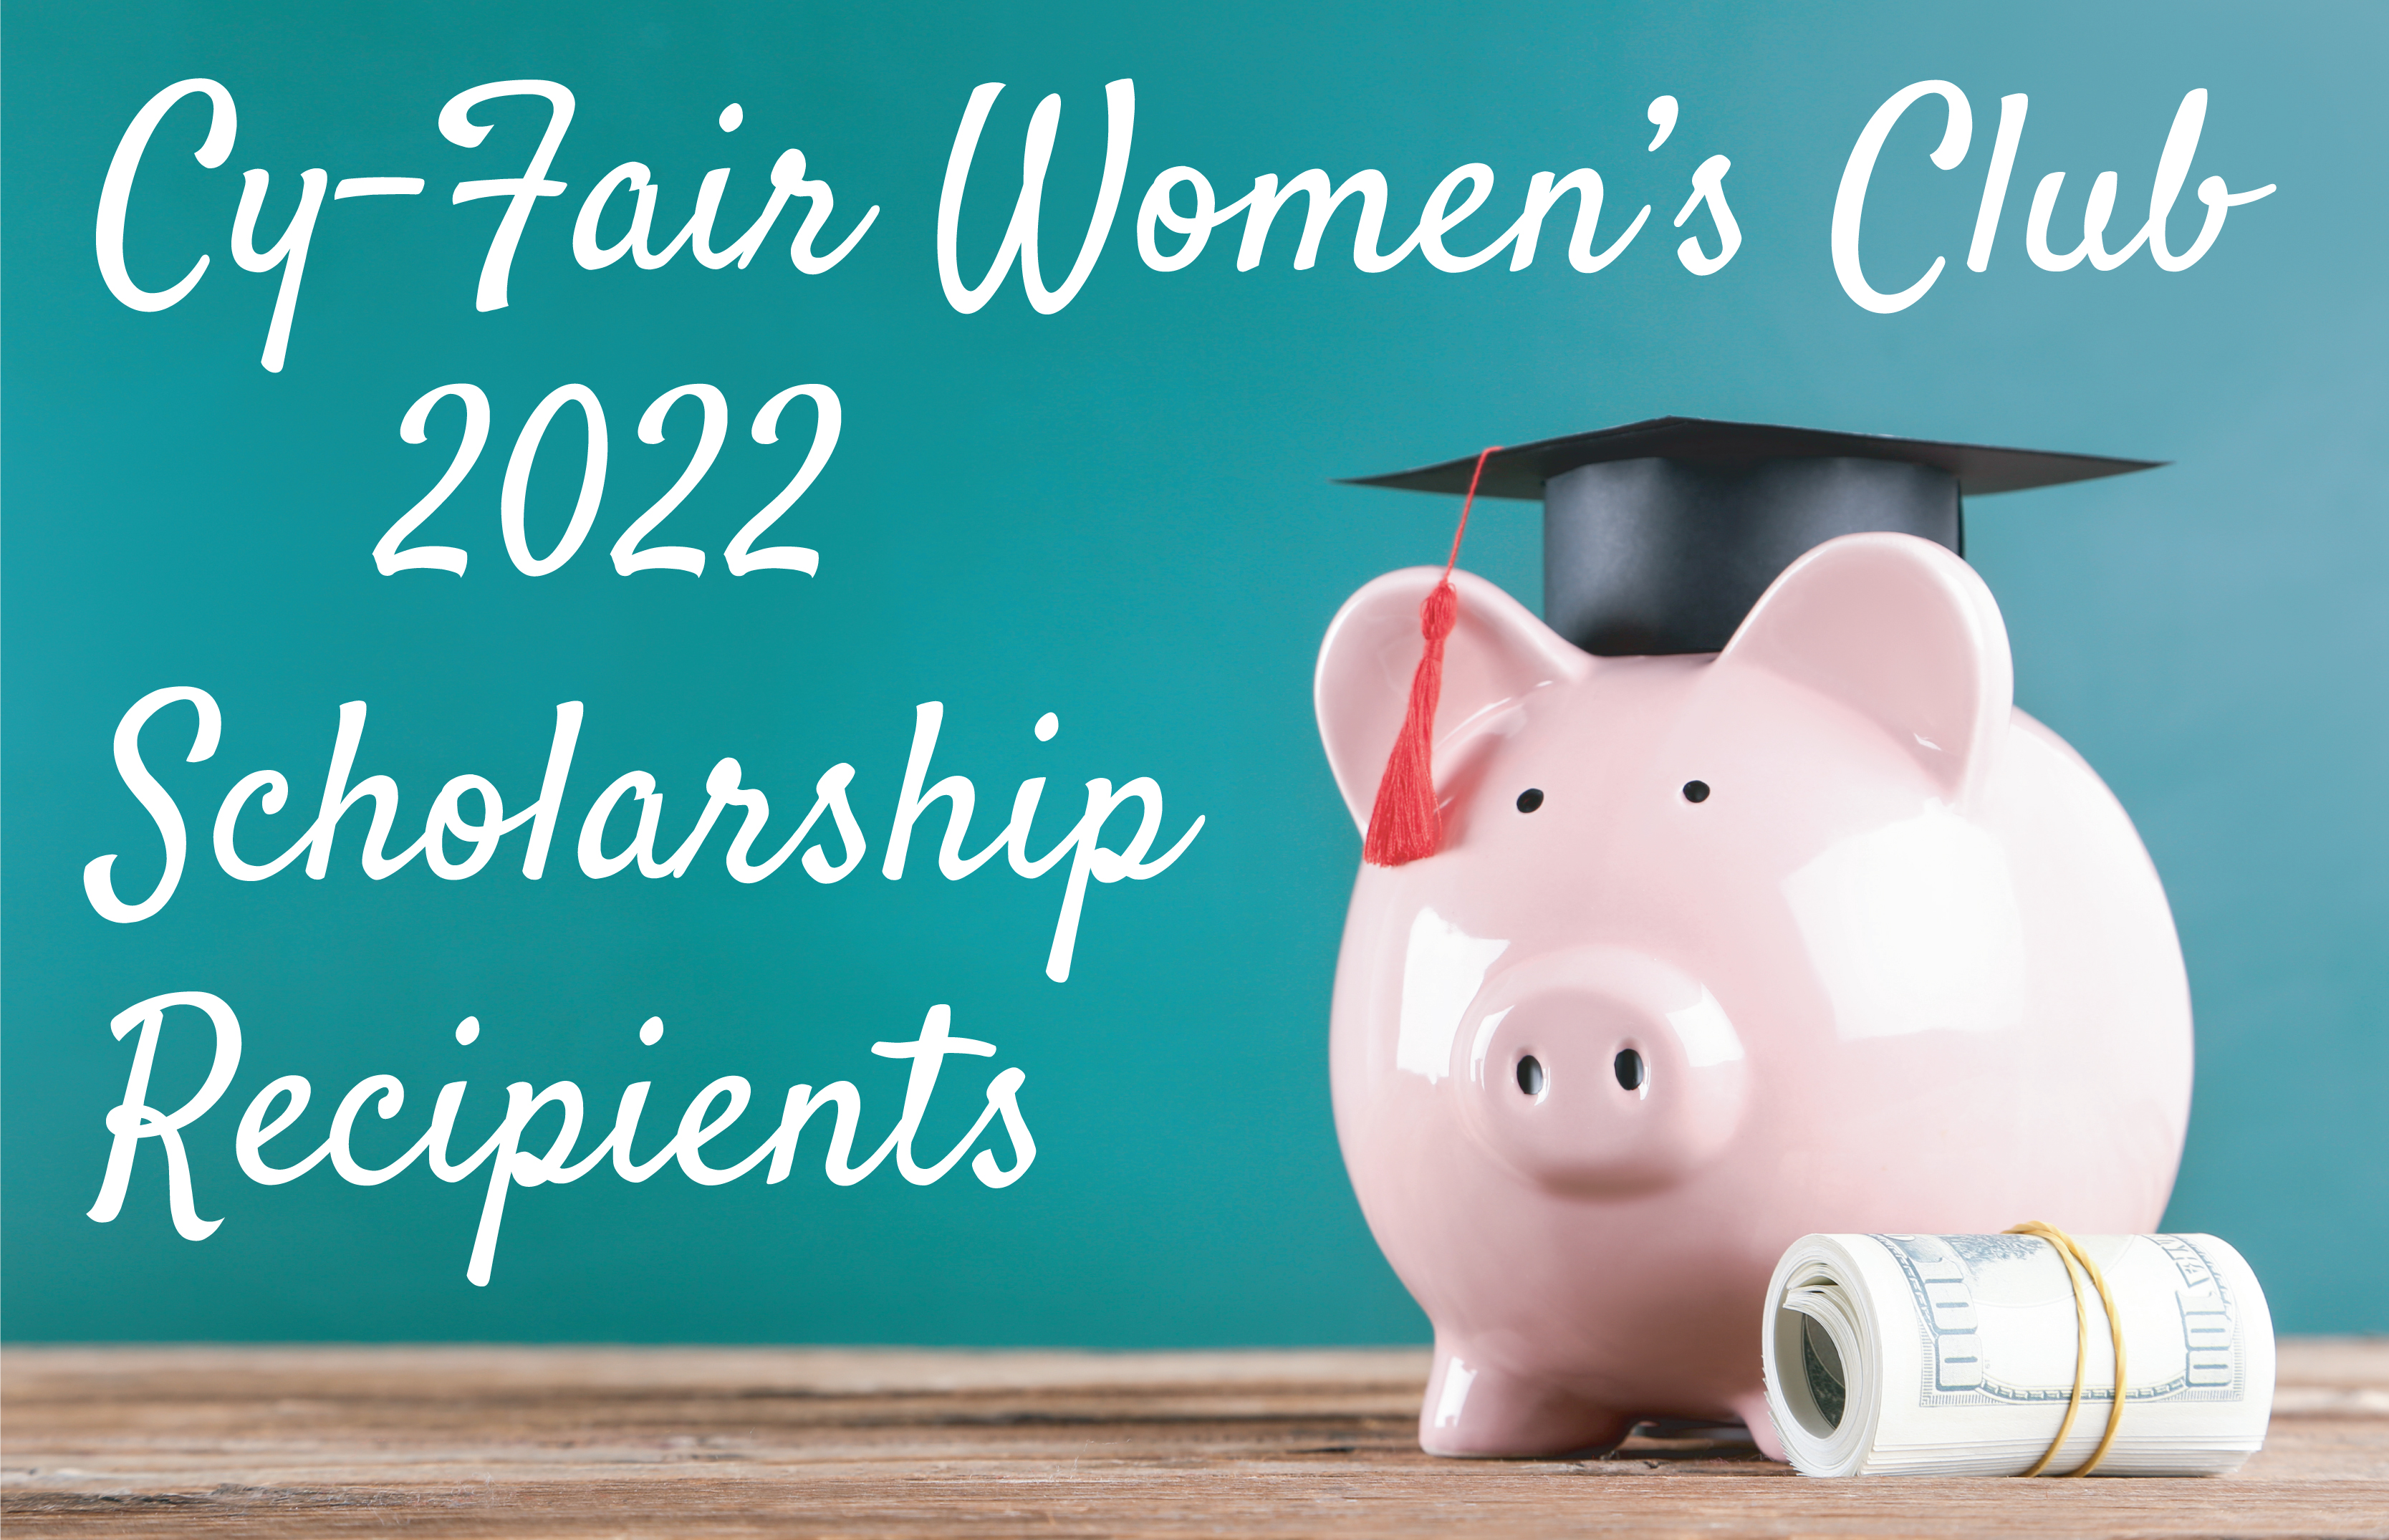 Cy-Fair Women's Club 2022 Scholarship Recipients